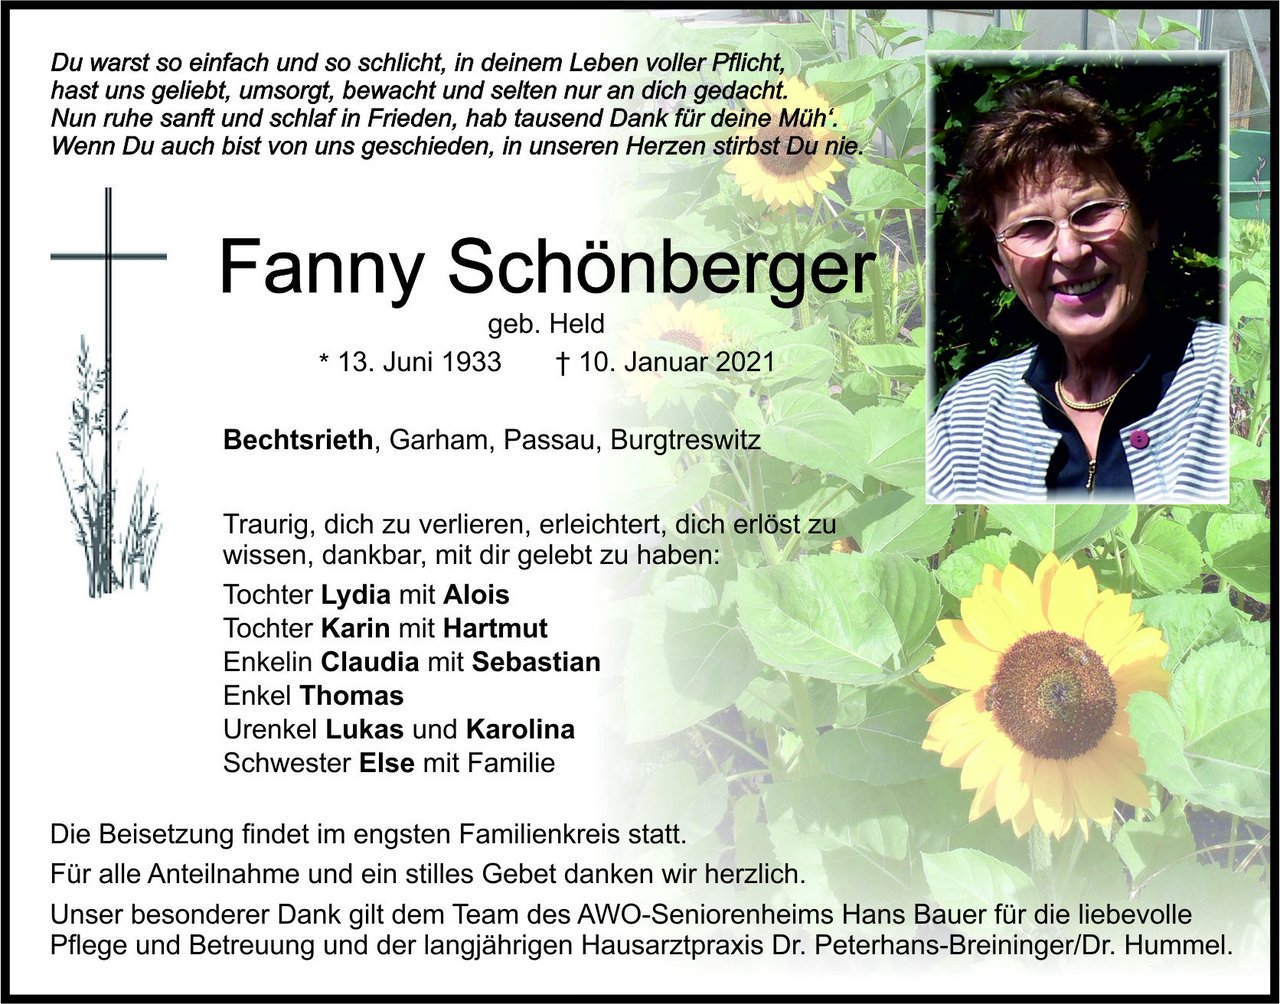 Traueranzeige Fanny Schönberger, Bechtsrieth